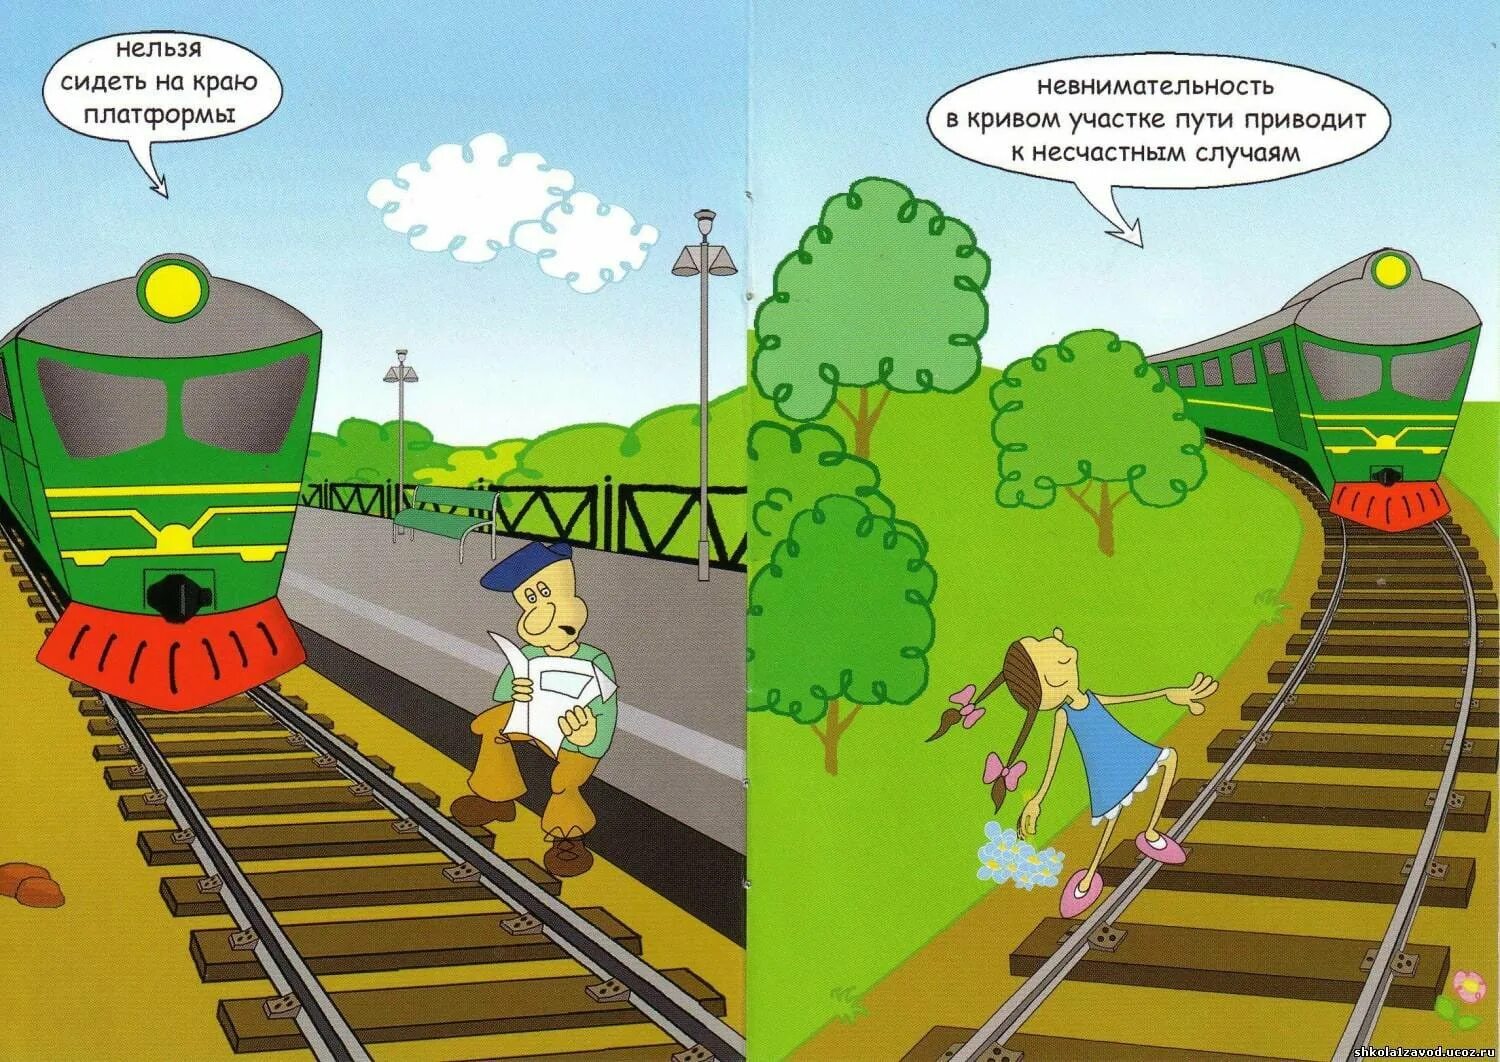 Правила движения железнодорожного поезда. Безопасность на железной дороге. Опасности на железной дороге. Безопасность на железной дороге рисунки. Безопасная железная дорога детям.